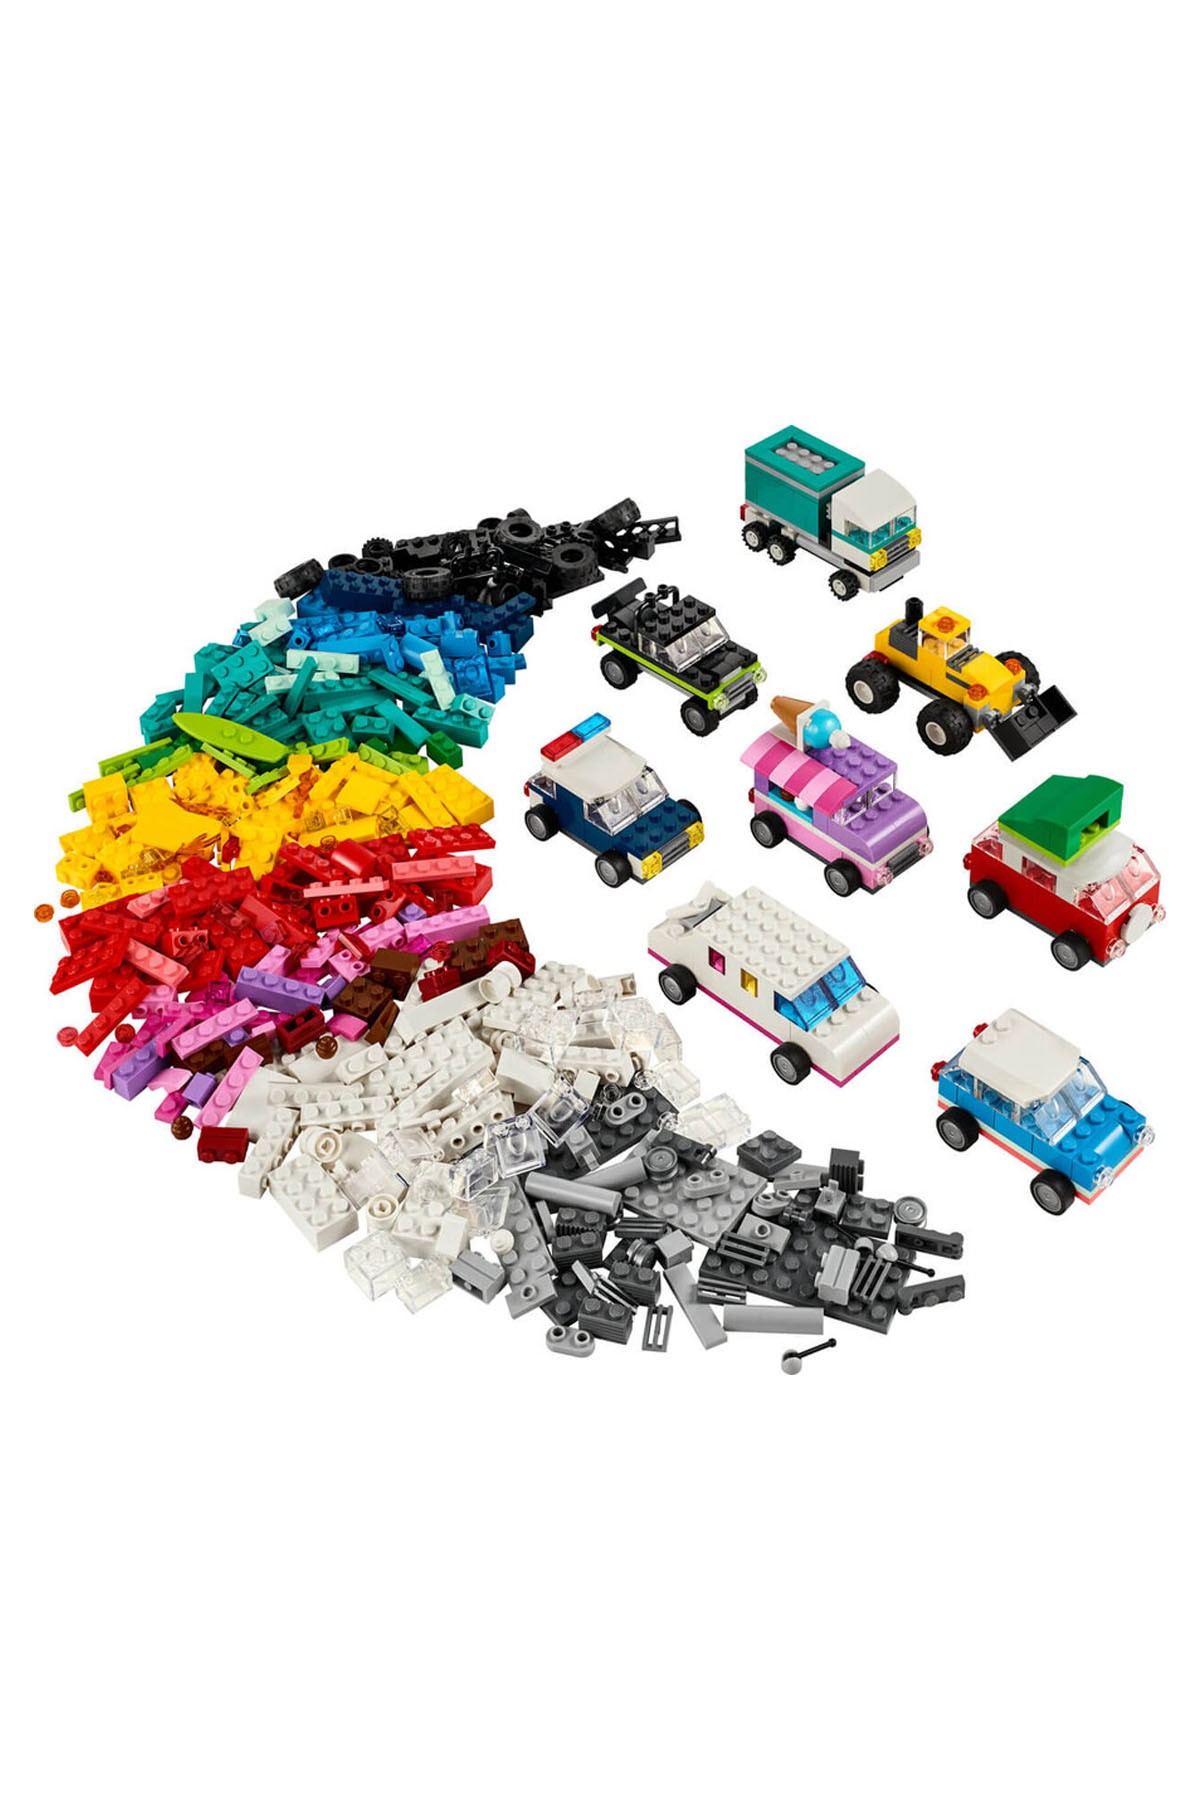 Lego Classic Yaratıcı Araçlar 11036